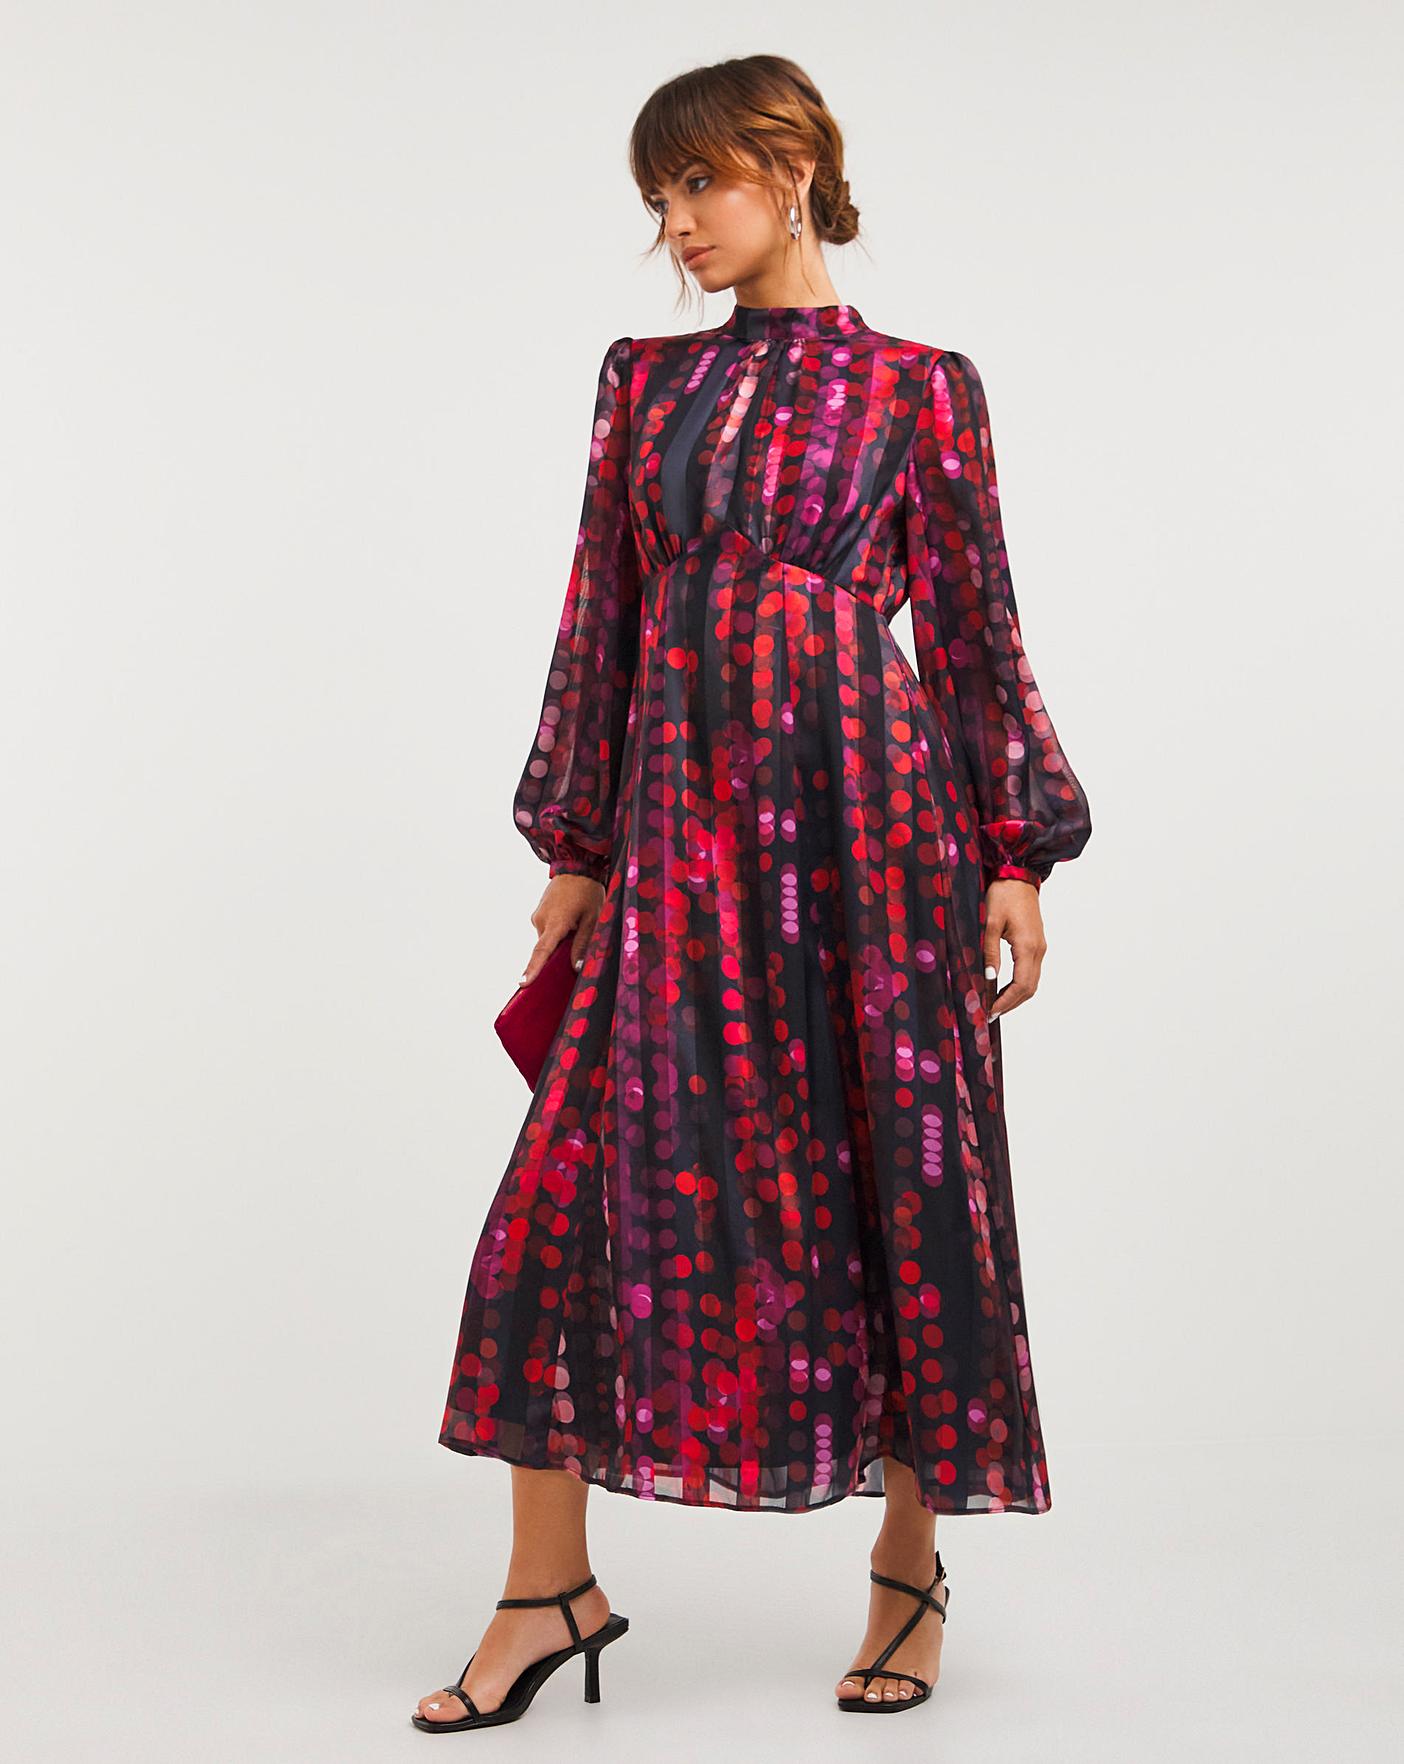 Joanna Hope Purple Spot Satin Maxi Dress | J D Williams